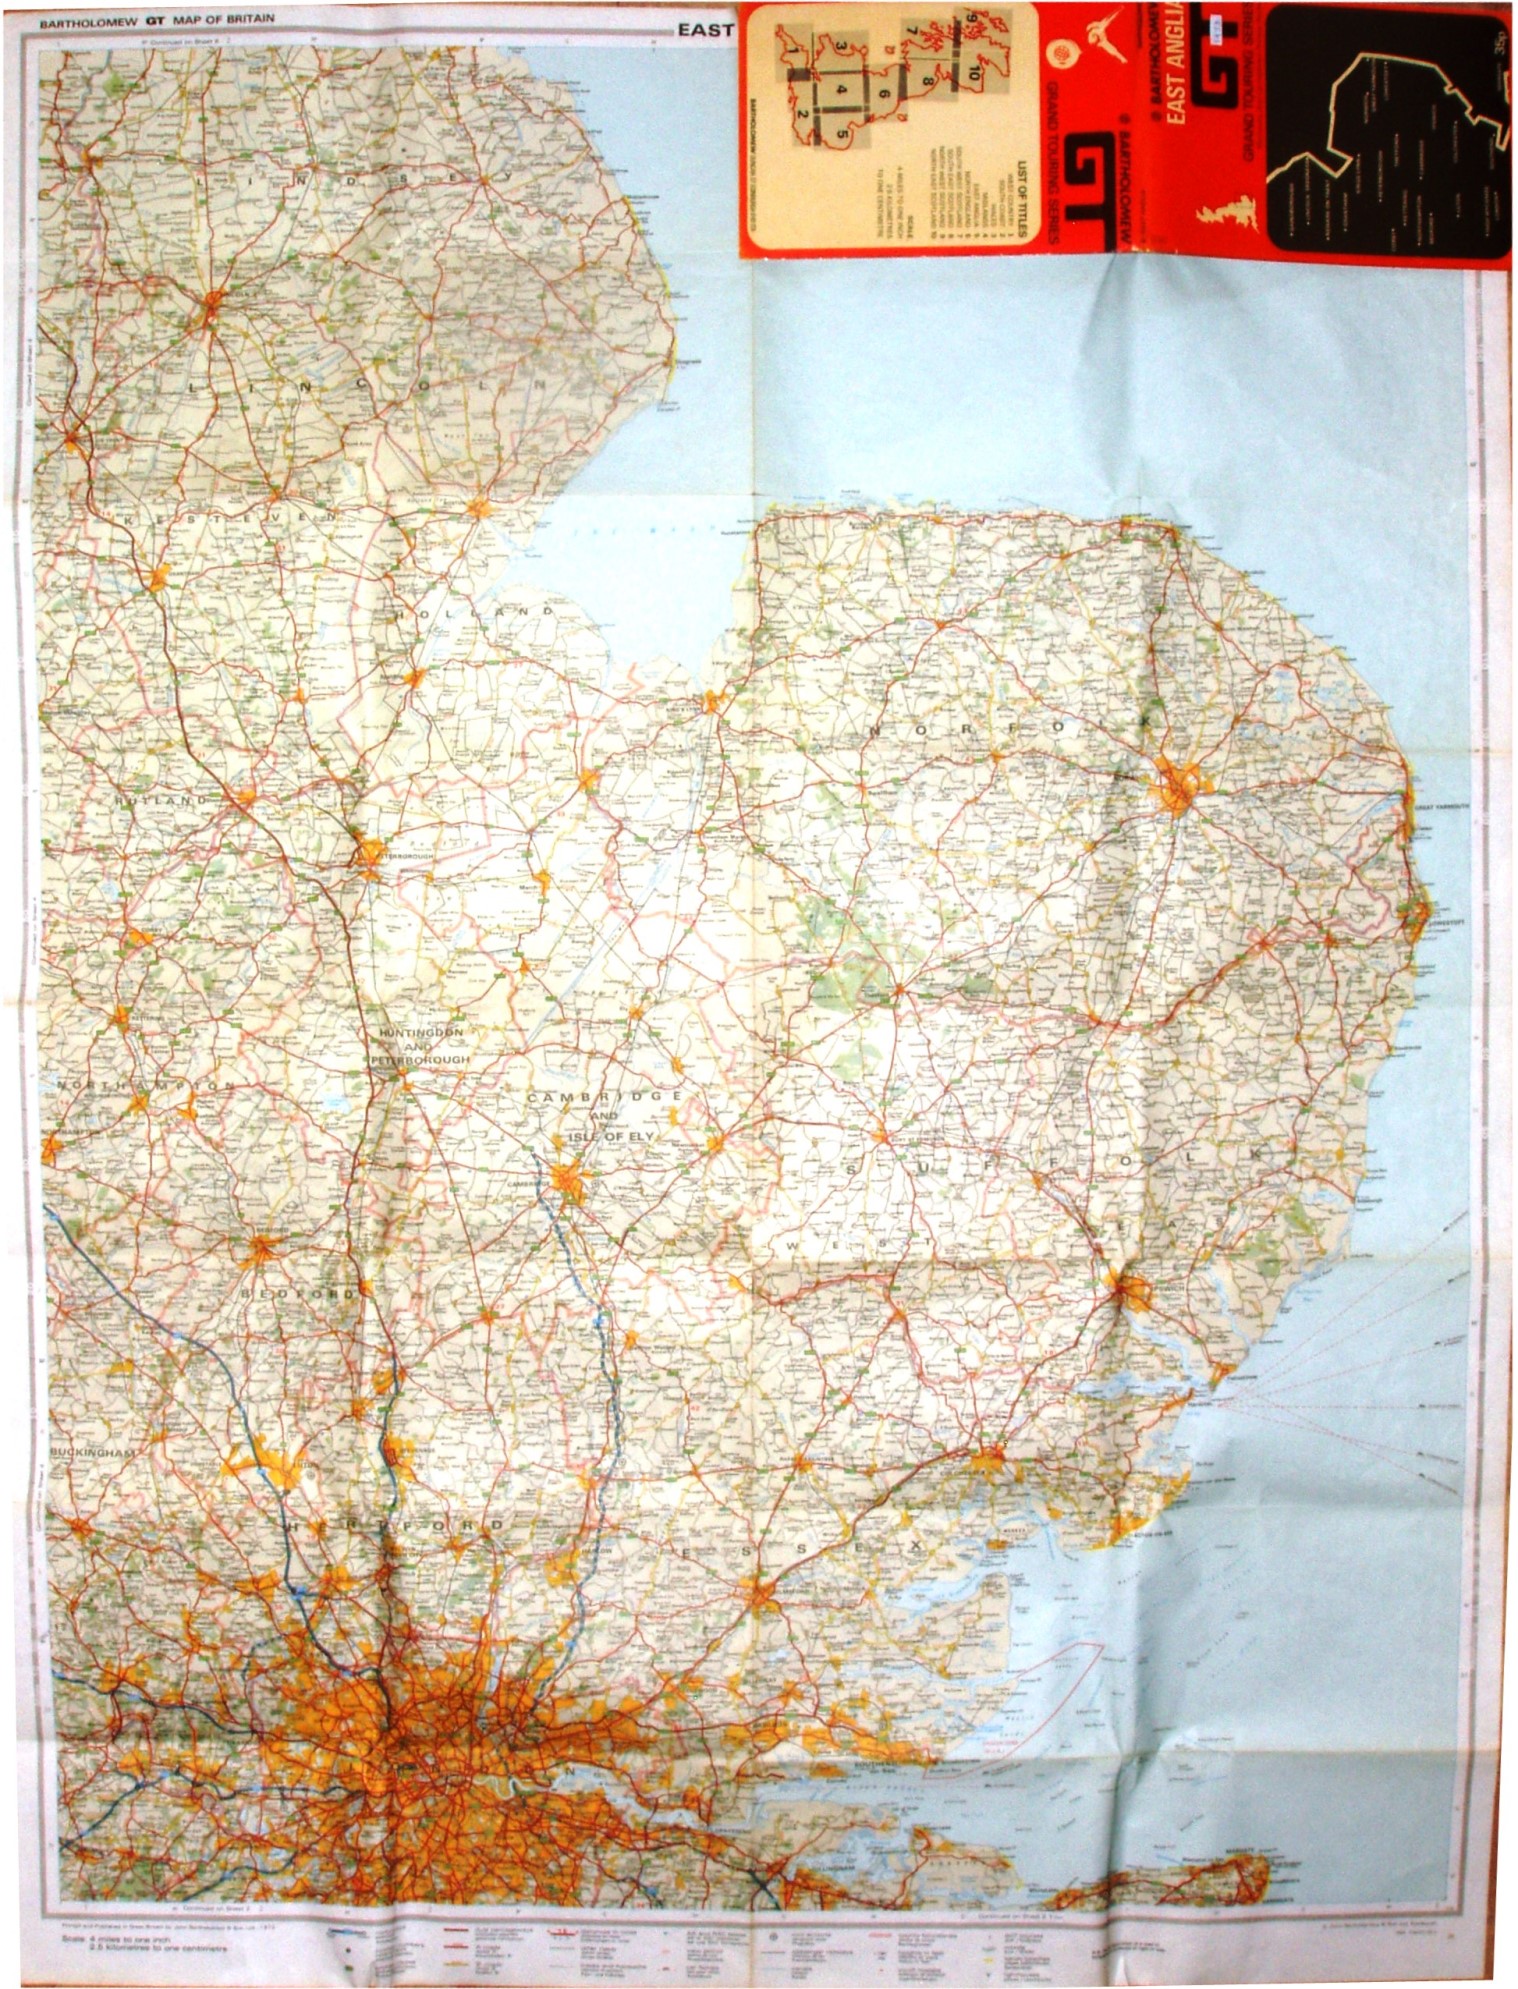 Bartholomew 1973, GT Map, Sheet 5